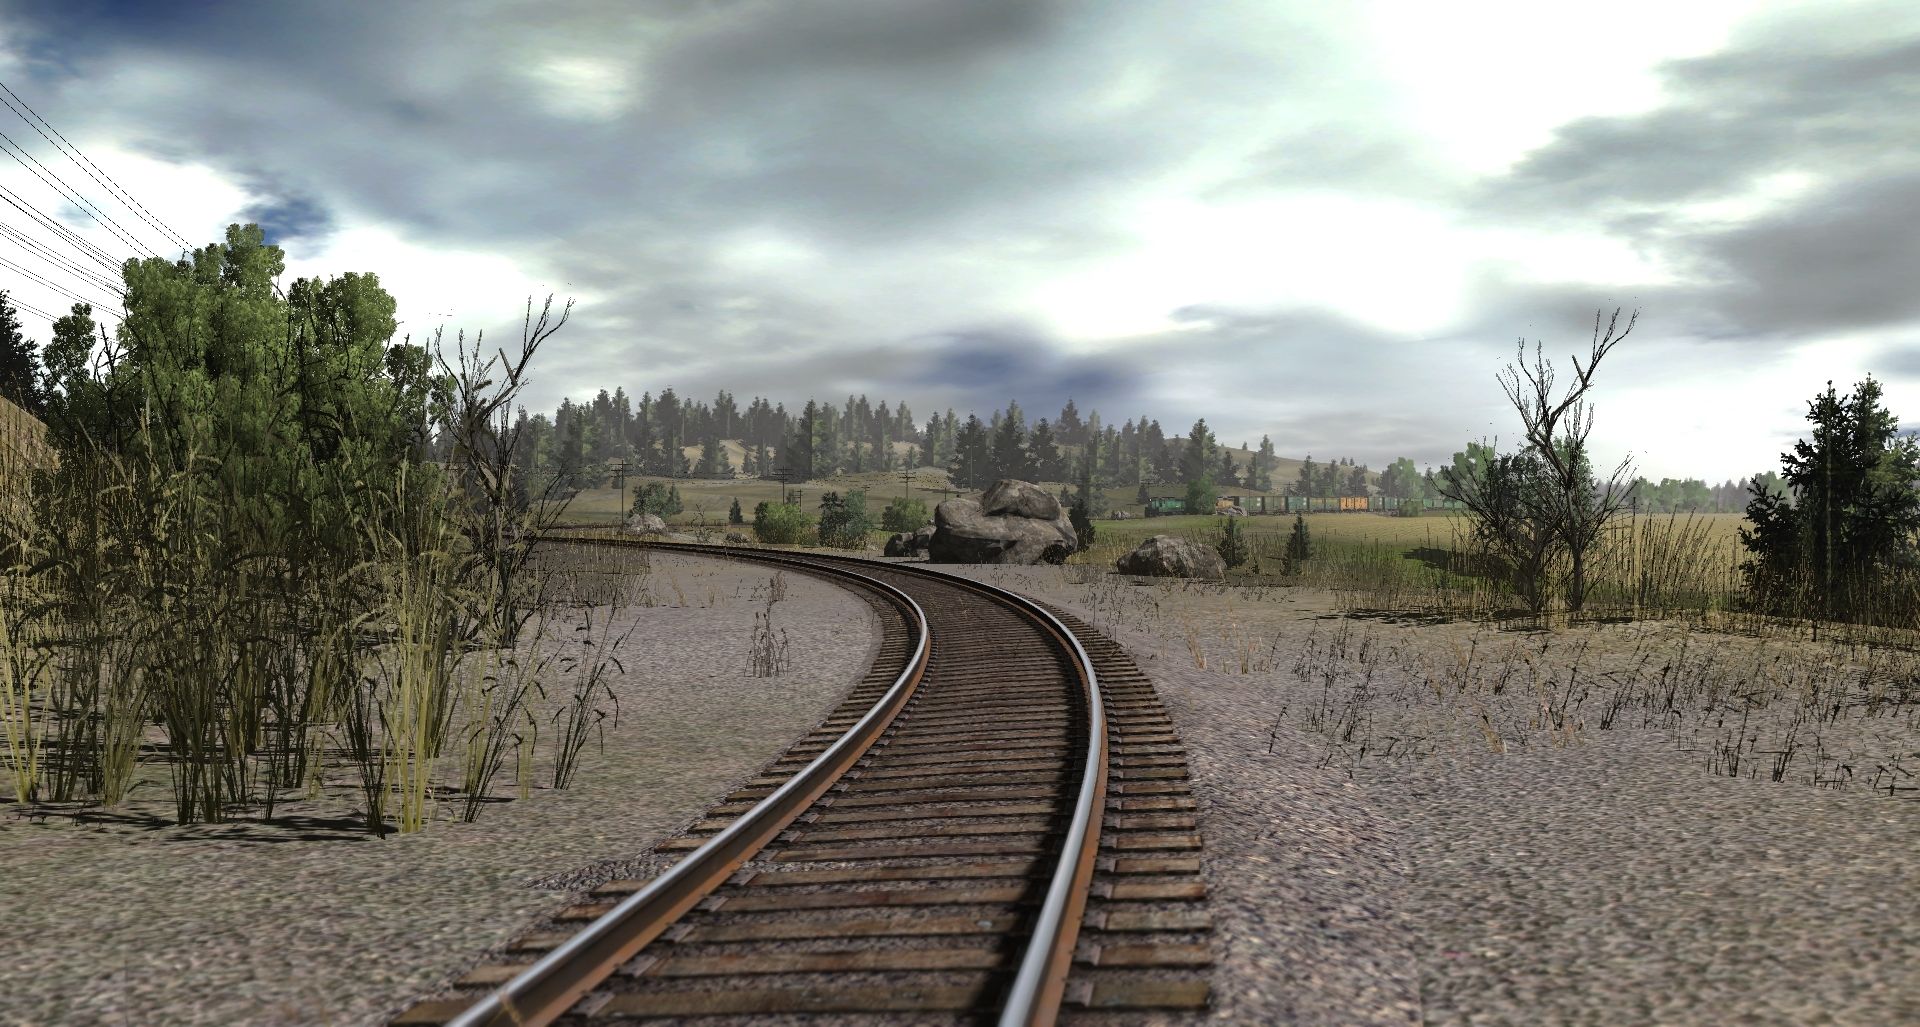 westpoint bridge simulator 2014 for mac